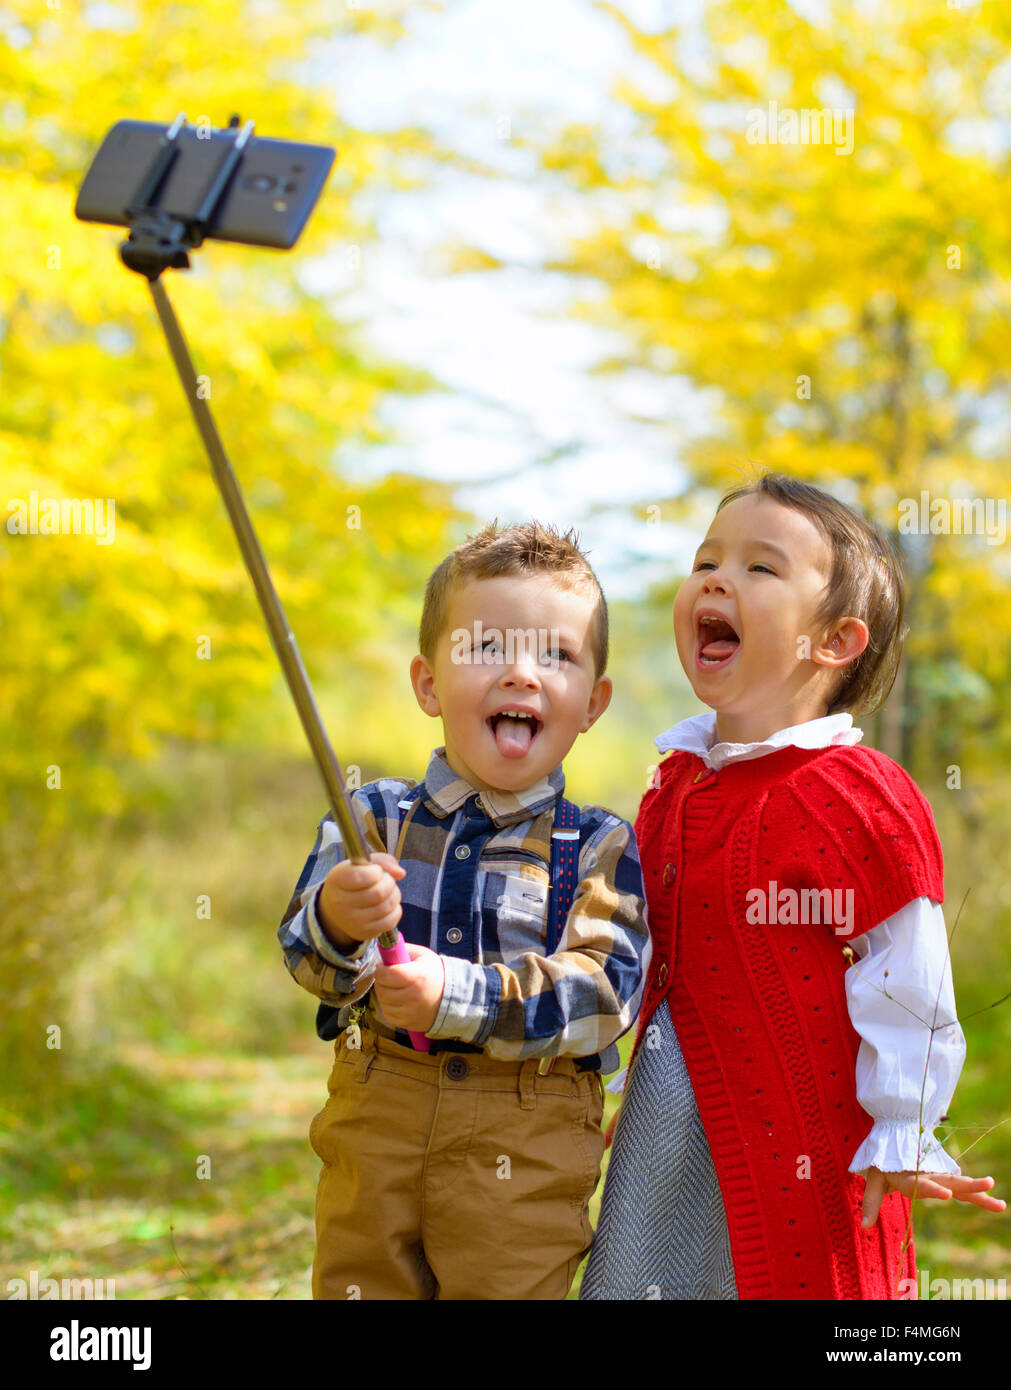 Two little kids taking selfie in park Stock Photo